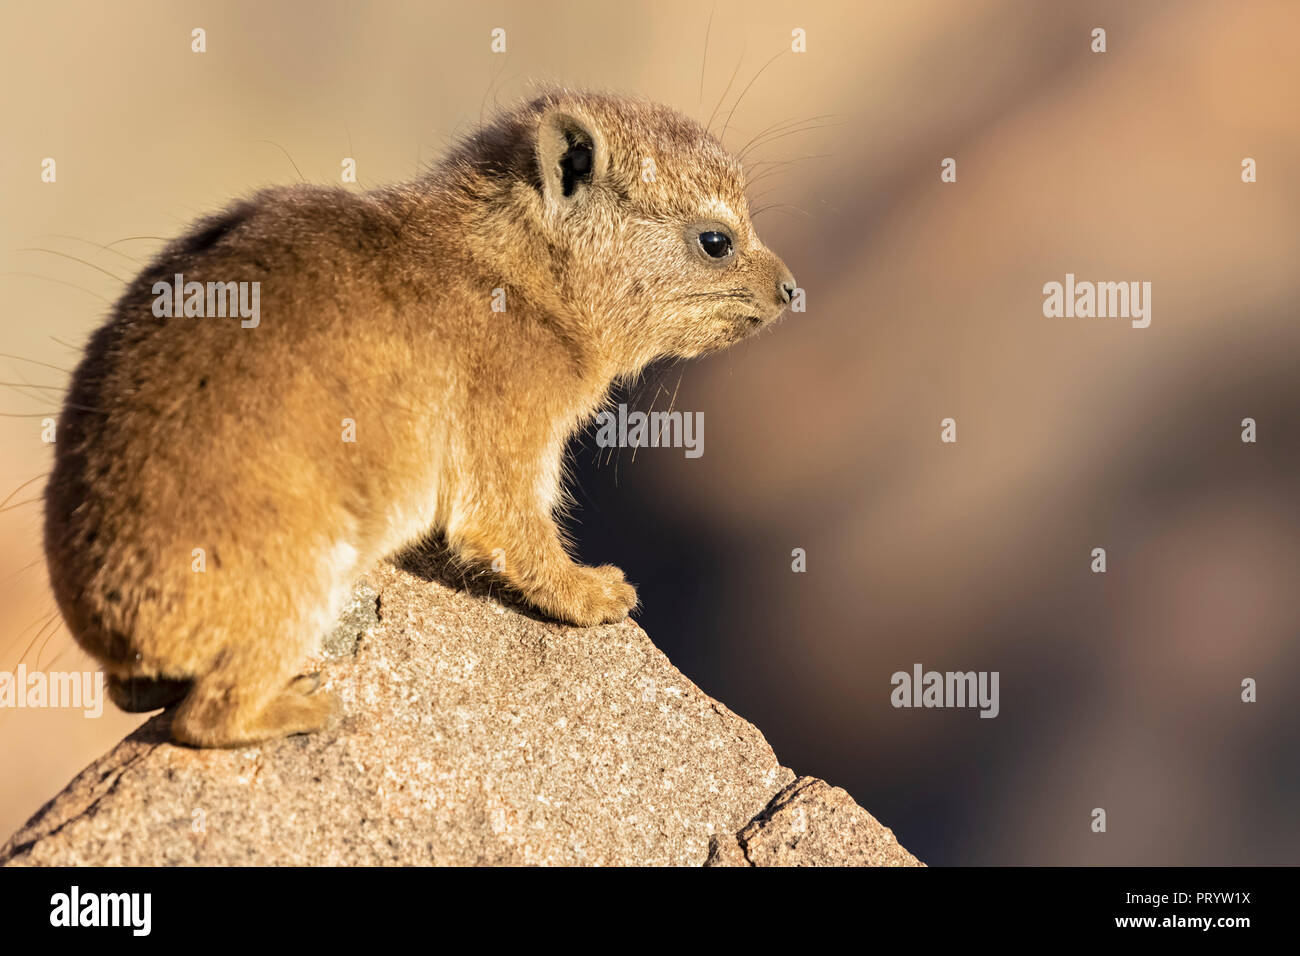 La Namibie, Keetmanshoop, Rock dassie, Procavia capensis, jeune animal Banque D'Images